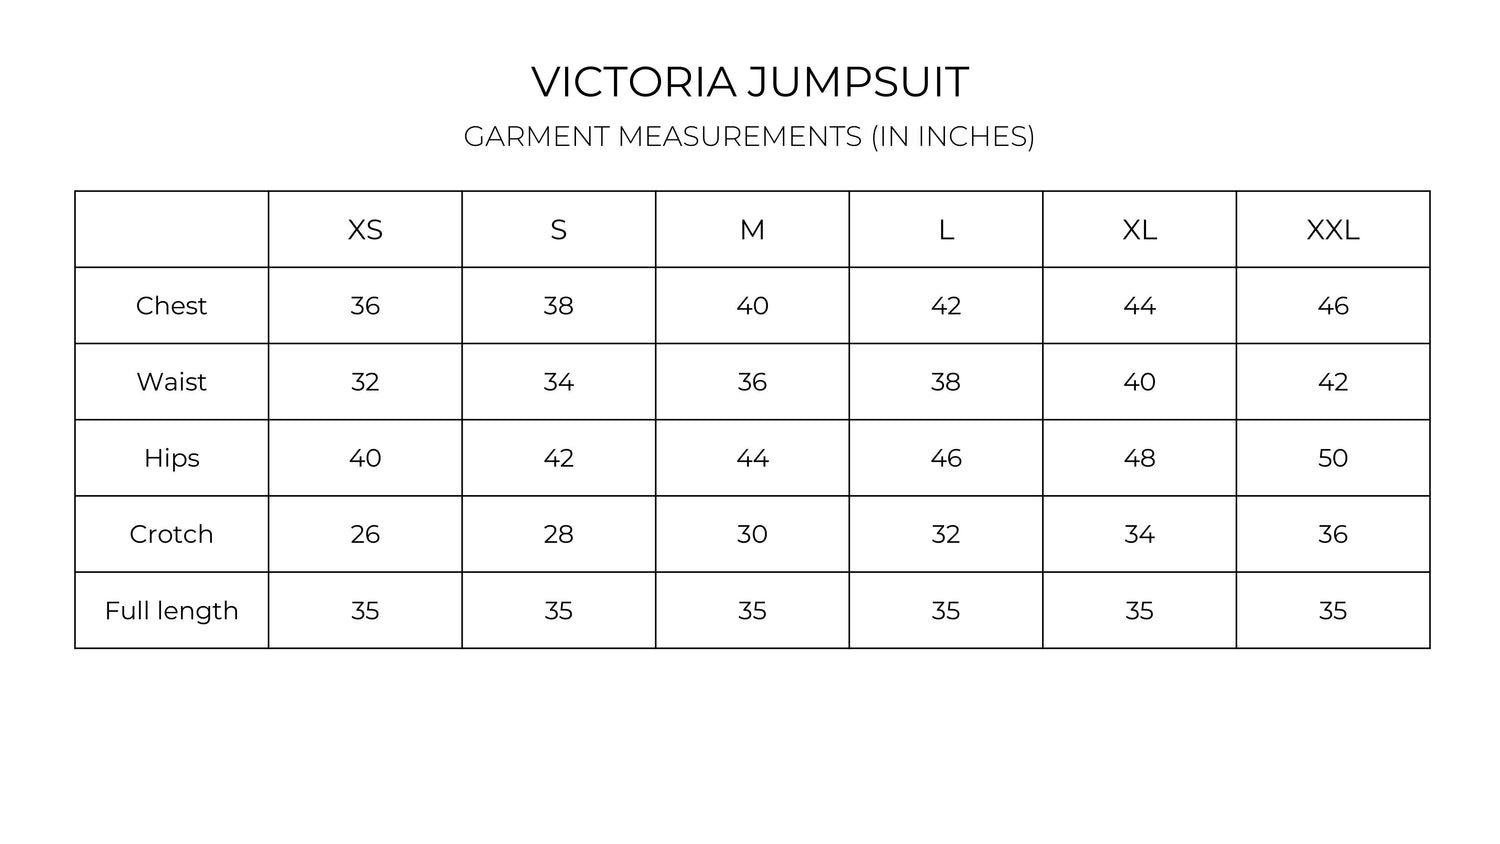 Victoria Jumpsuit